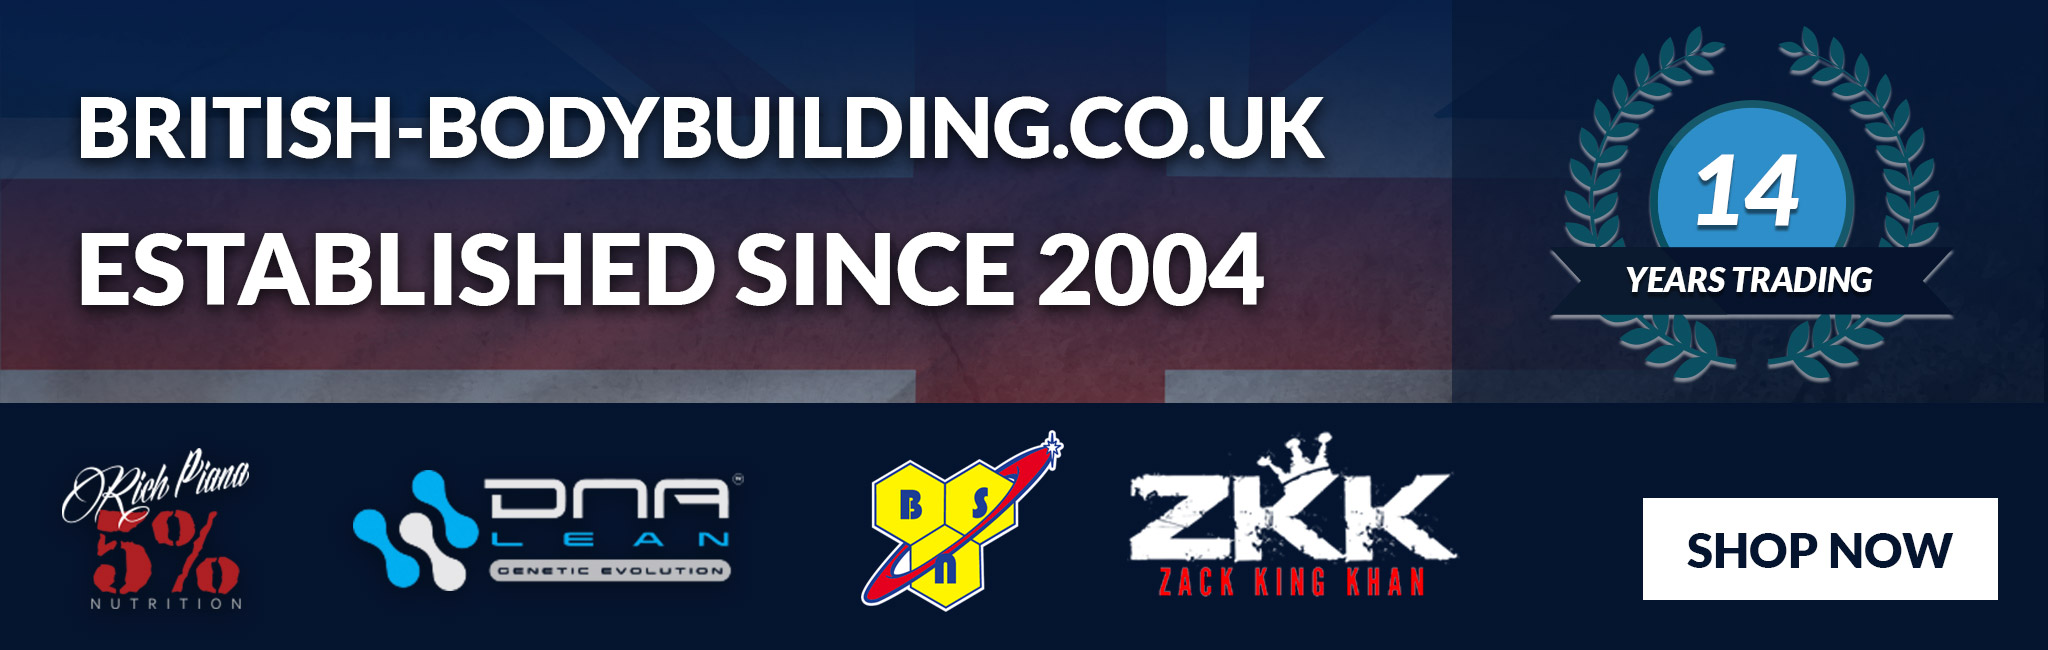 British-Bodybuilding.co.uk - Established since 2004 - 14 Years Trading